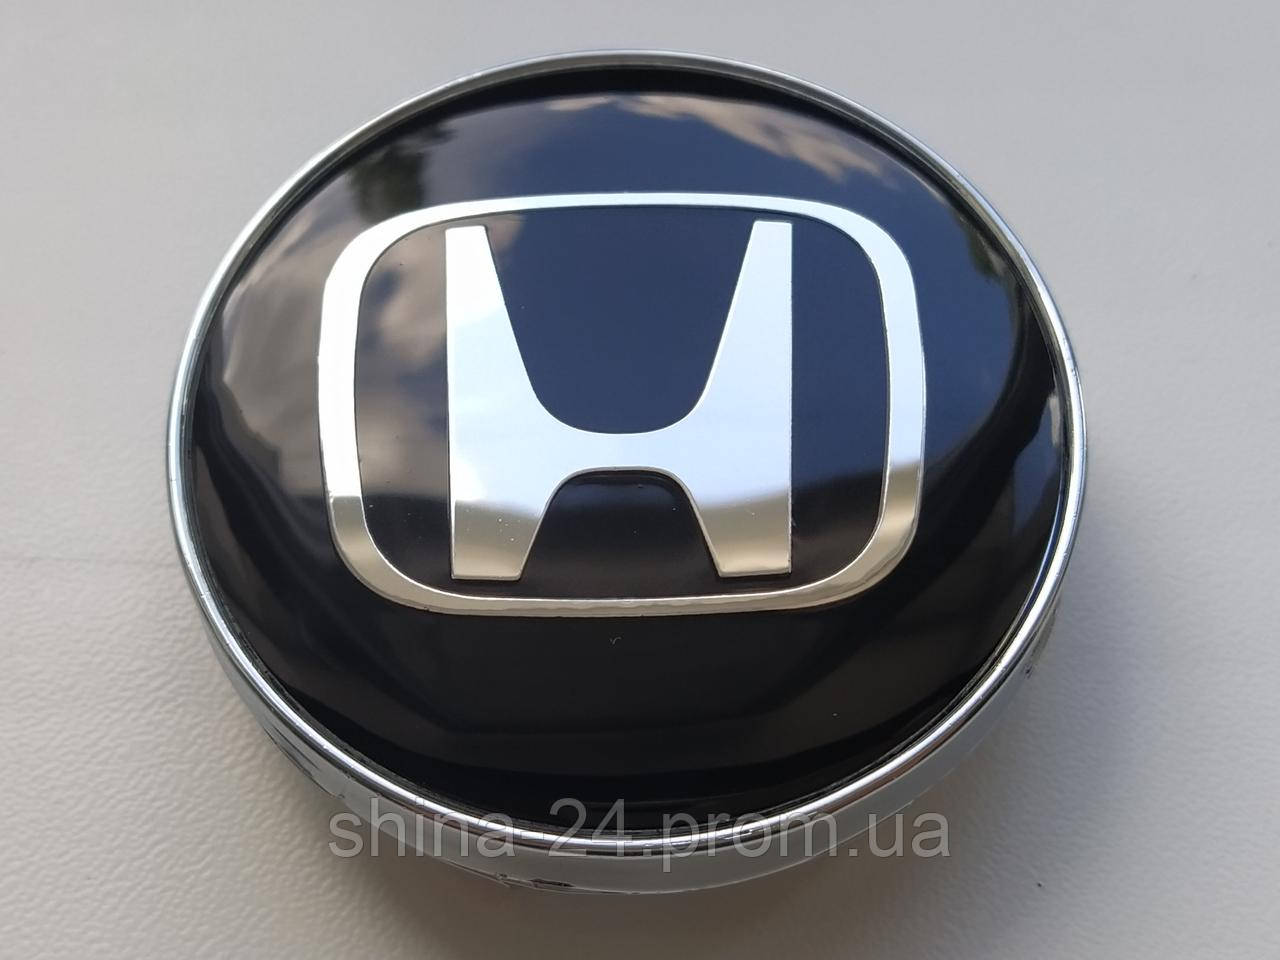 Колпачки заглушки в литые диски Honda 60/56/10 мм. Черные/Хром